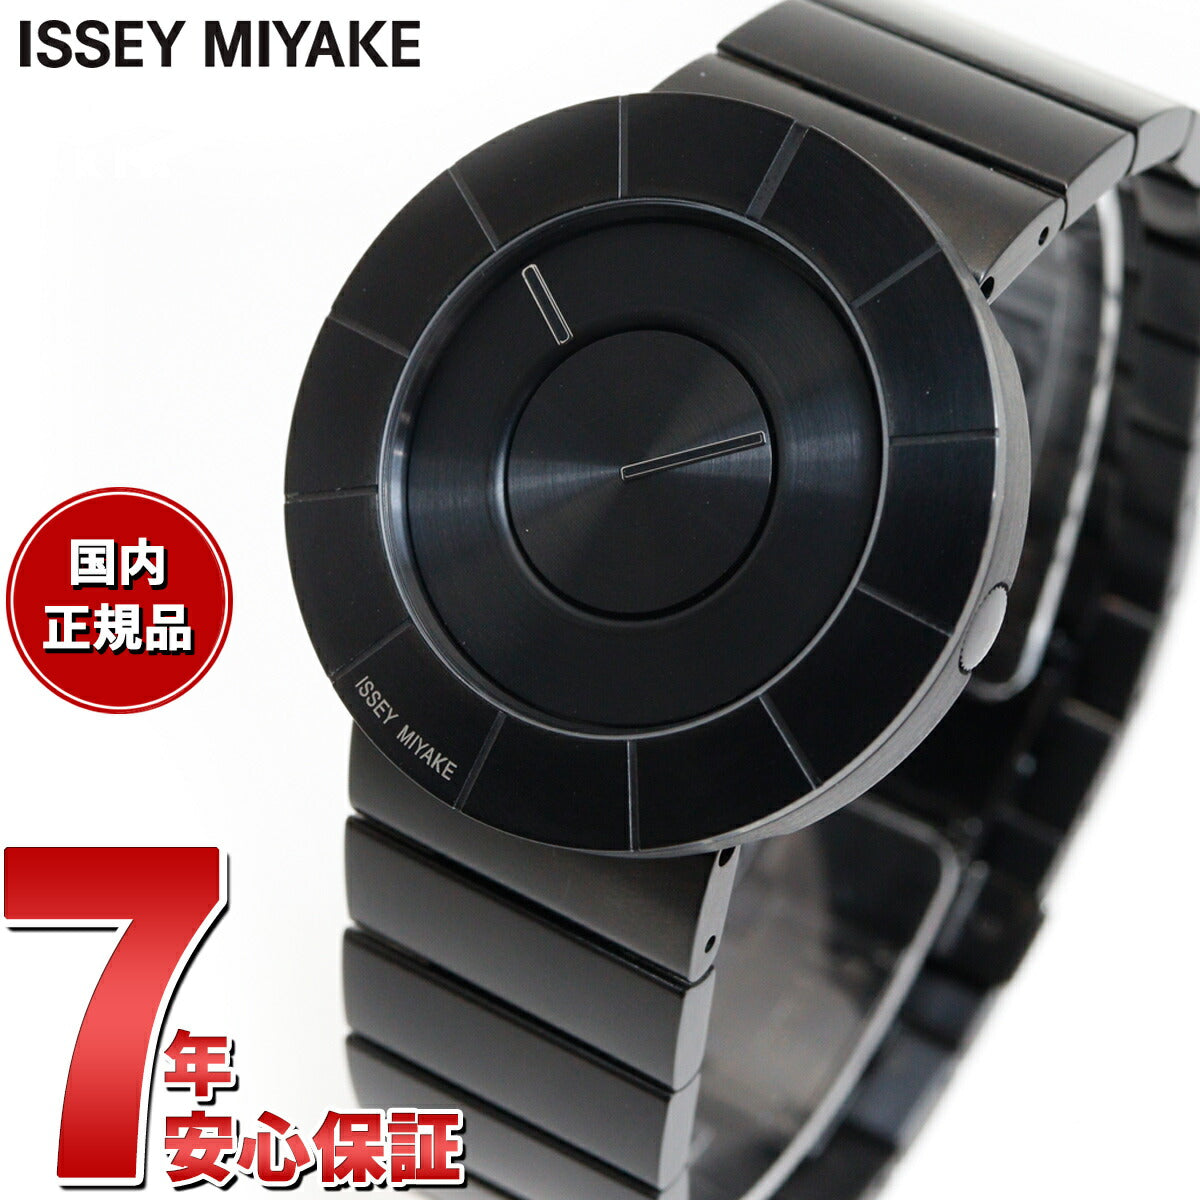 セレクション ISSEY MIYAKE TO(ティーオー) 腕時計 ウォッチ 腕時計